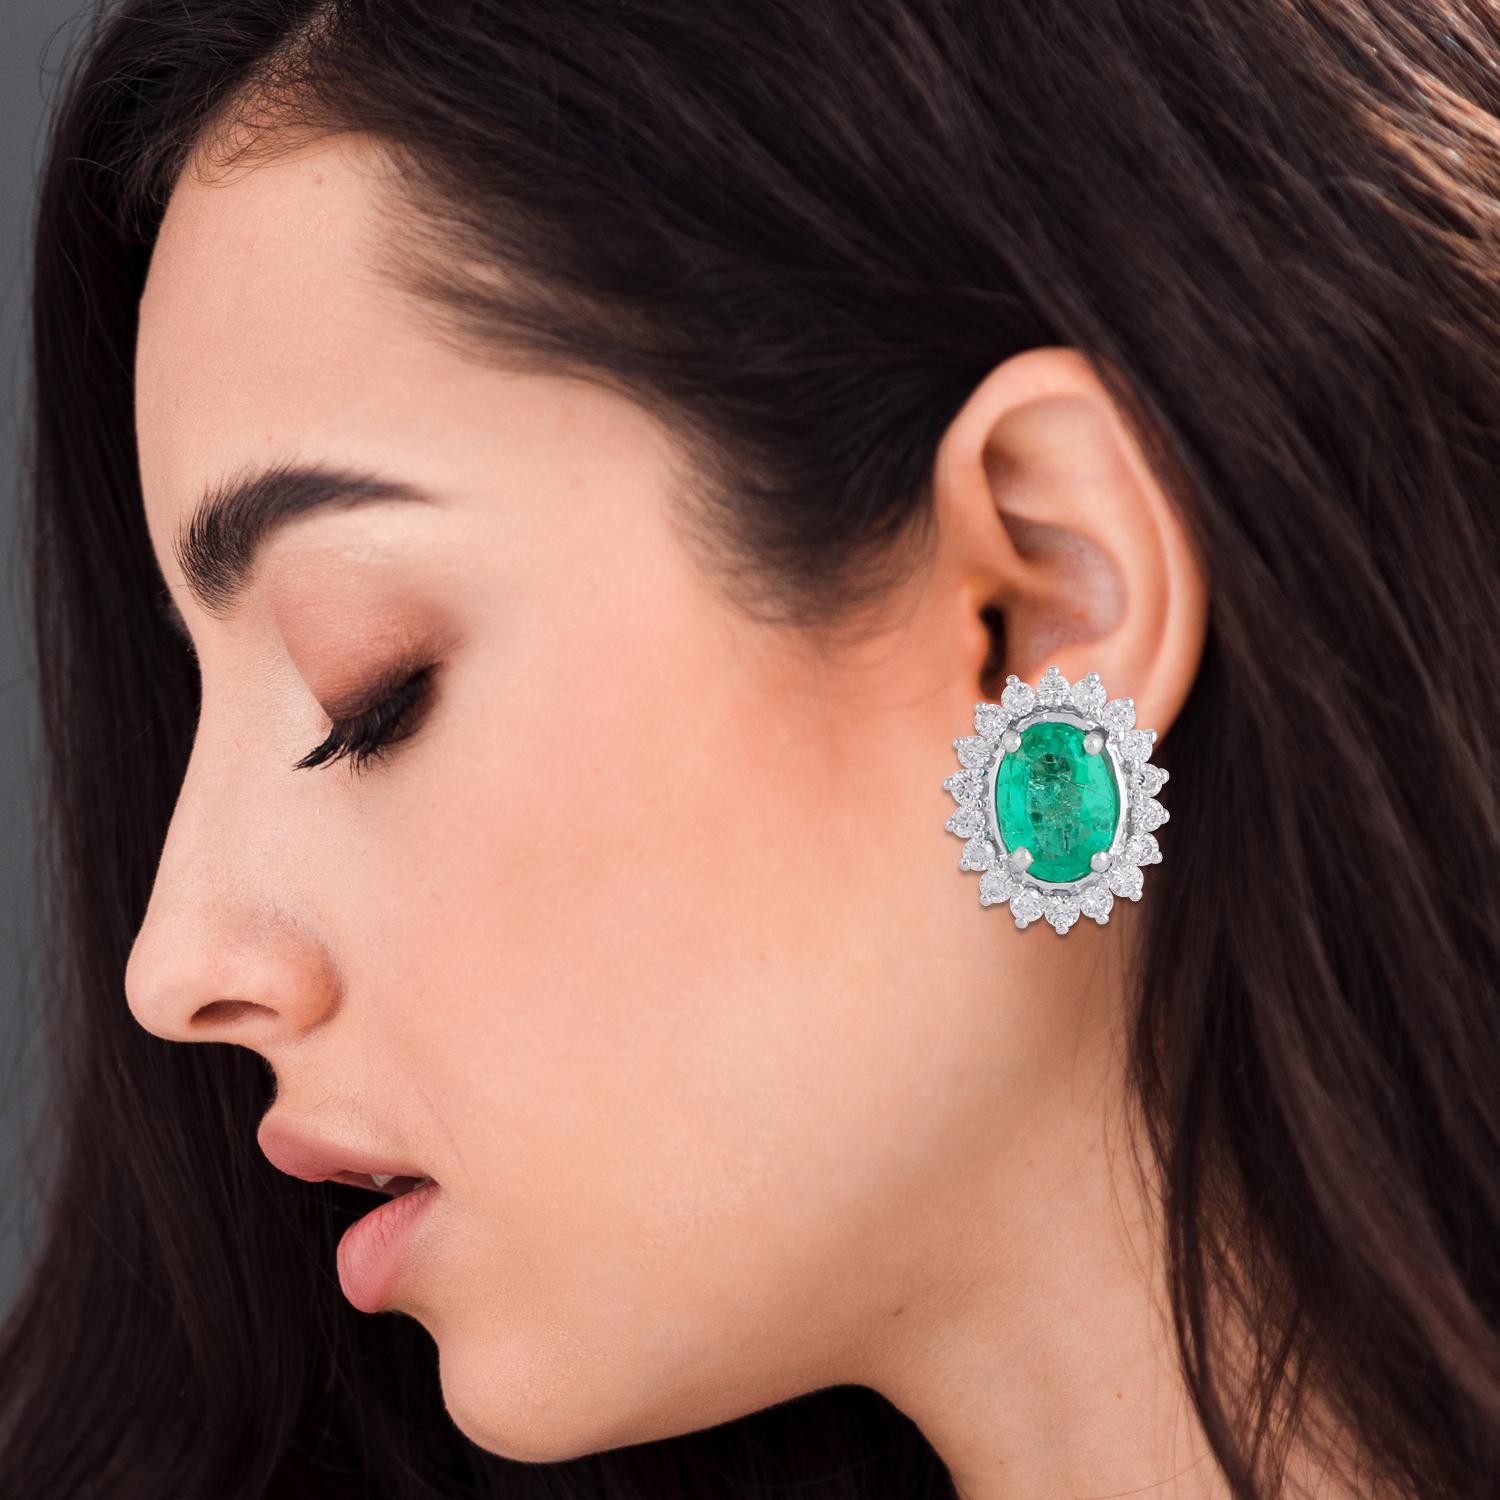 Oval Shape Zambian Emerald Gemstone Stud Earrings Diamond 18 Karat White Gold For Sale 1